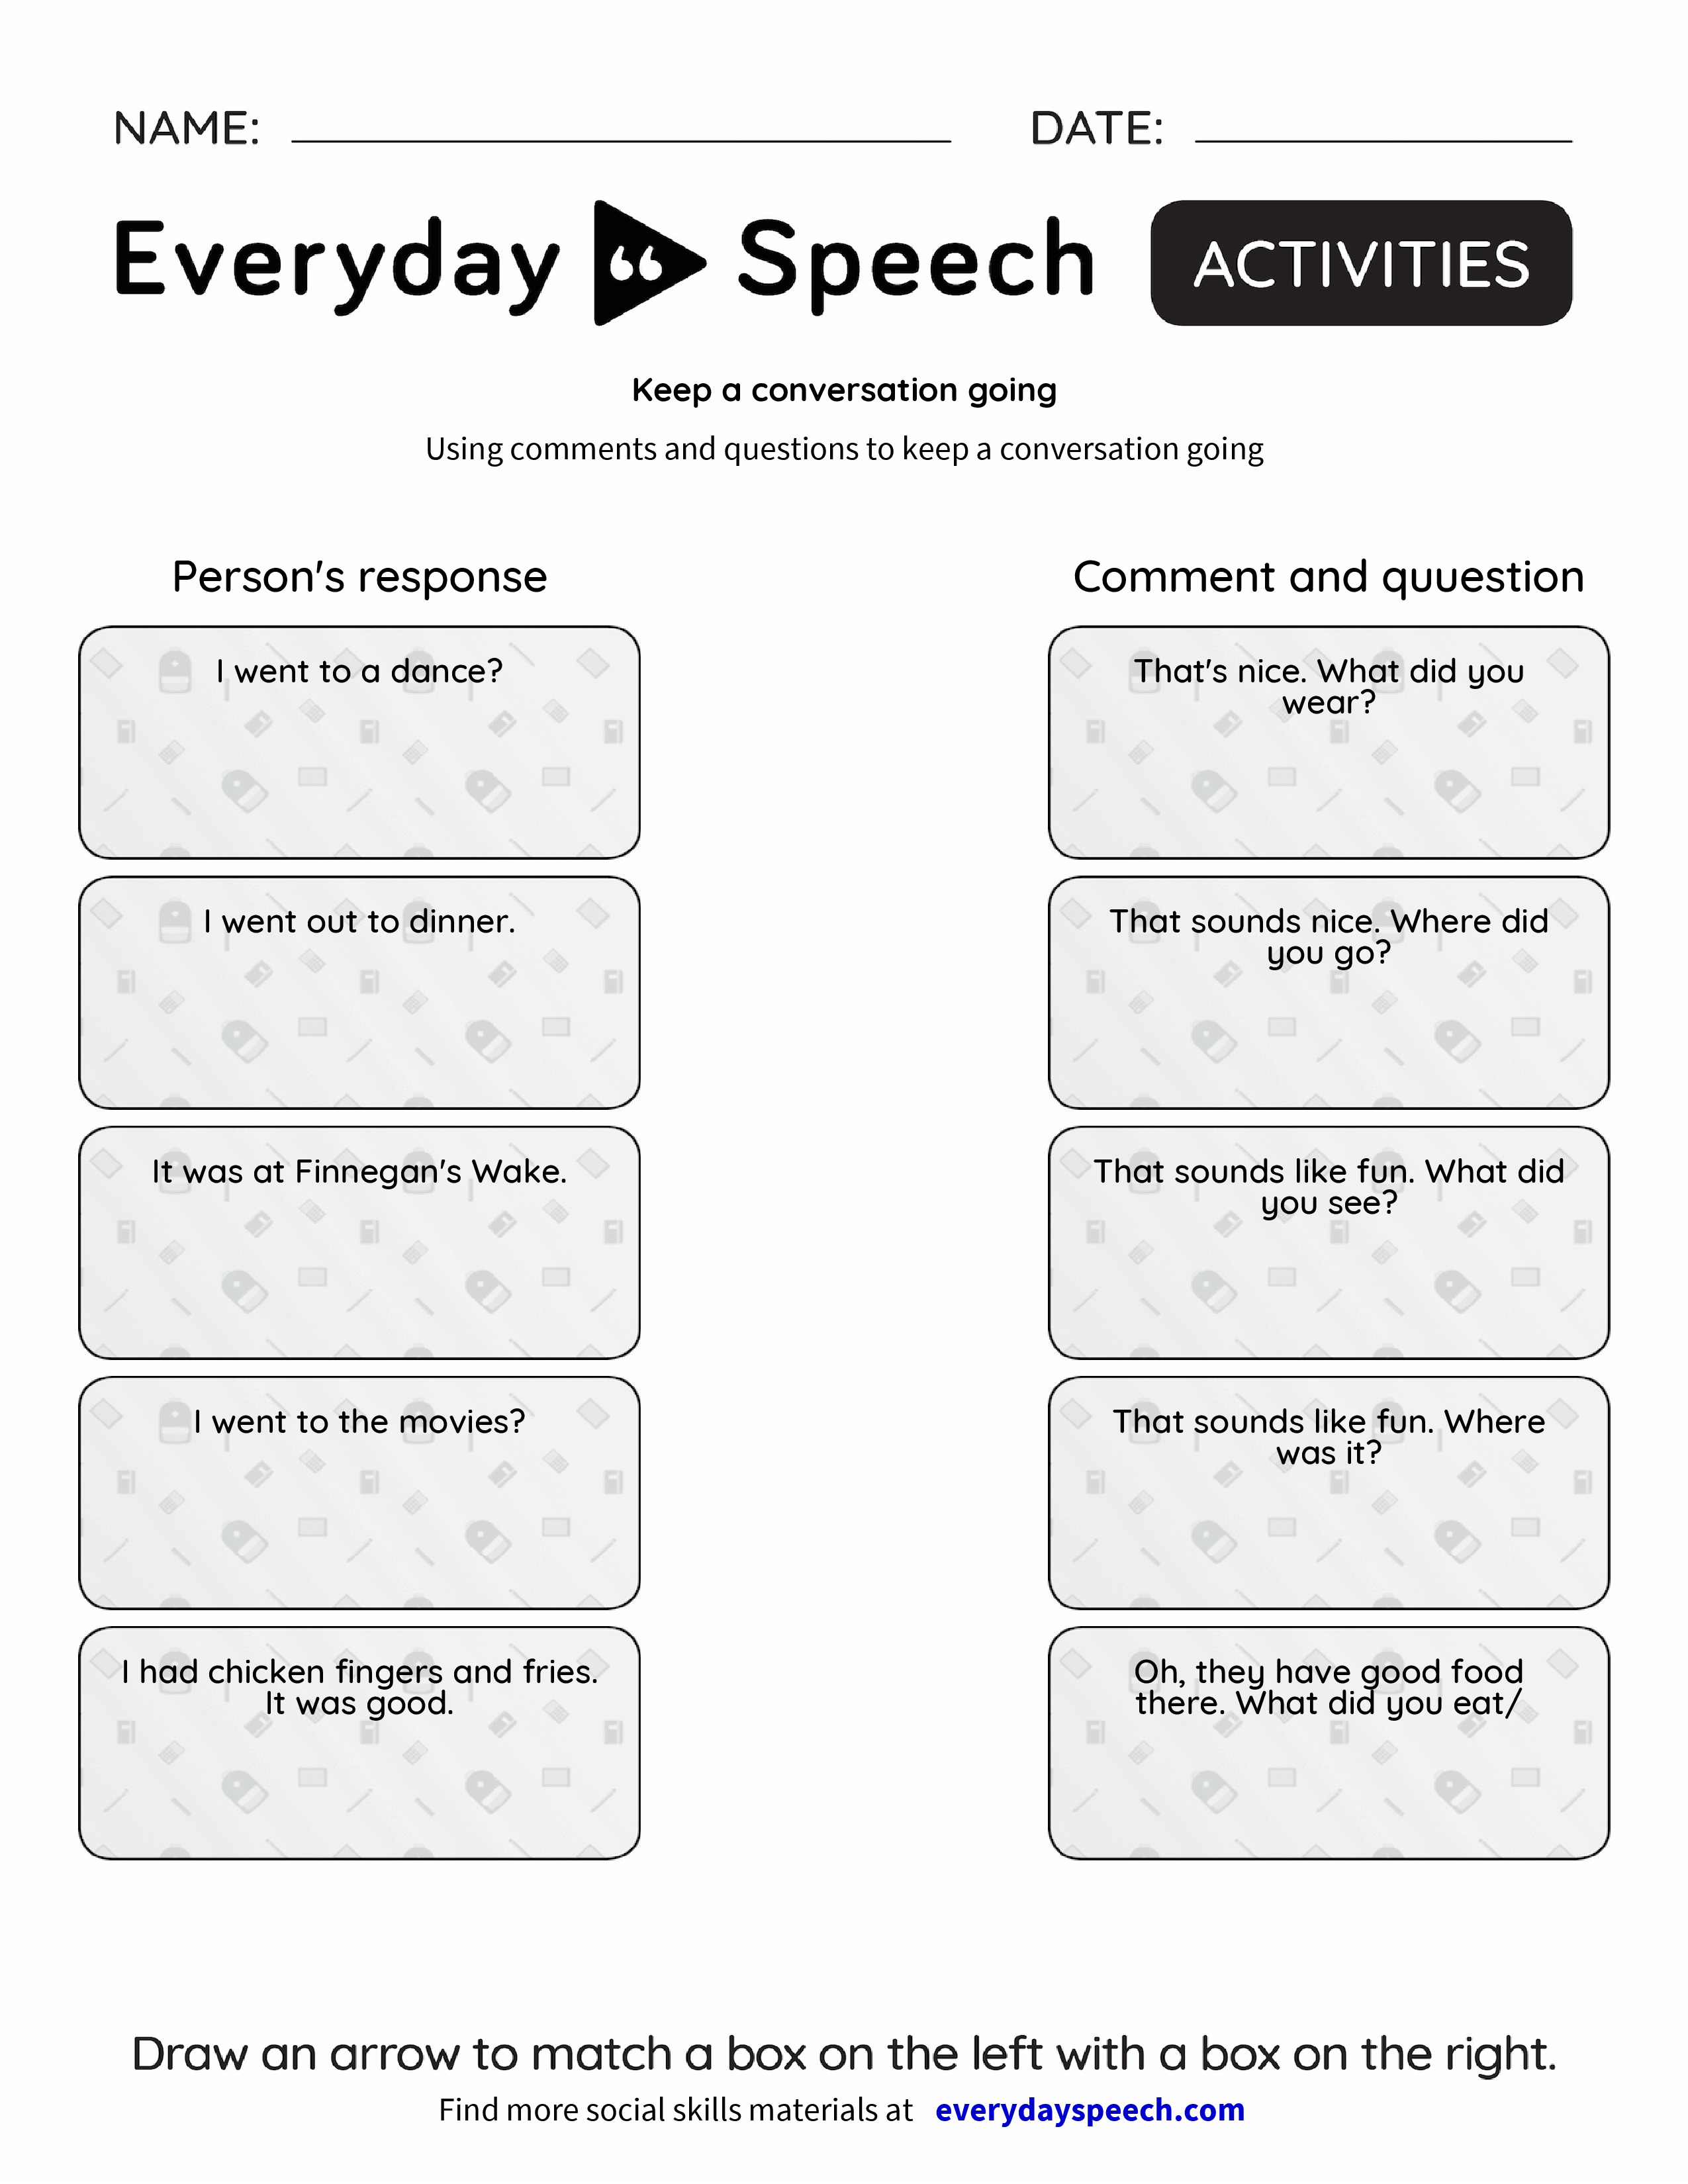 keep-a-conversation-going-everyday-speech-everyday-speech